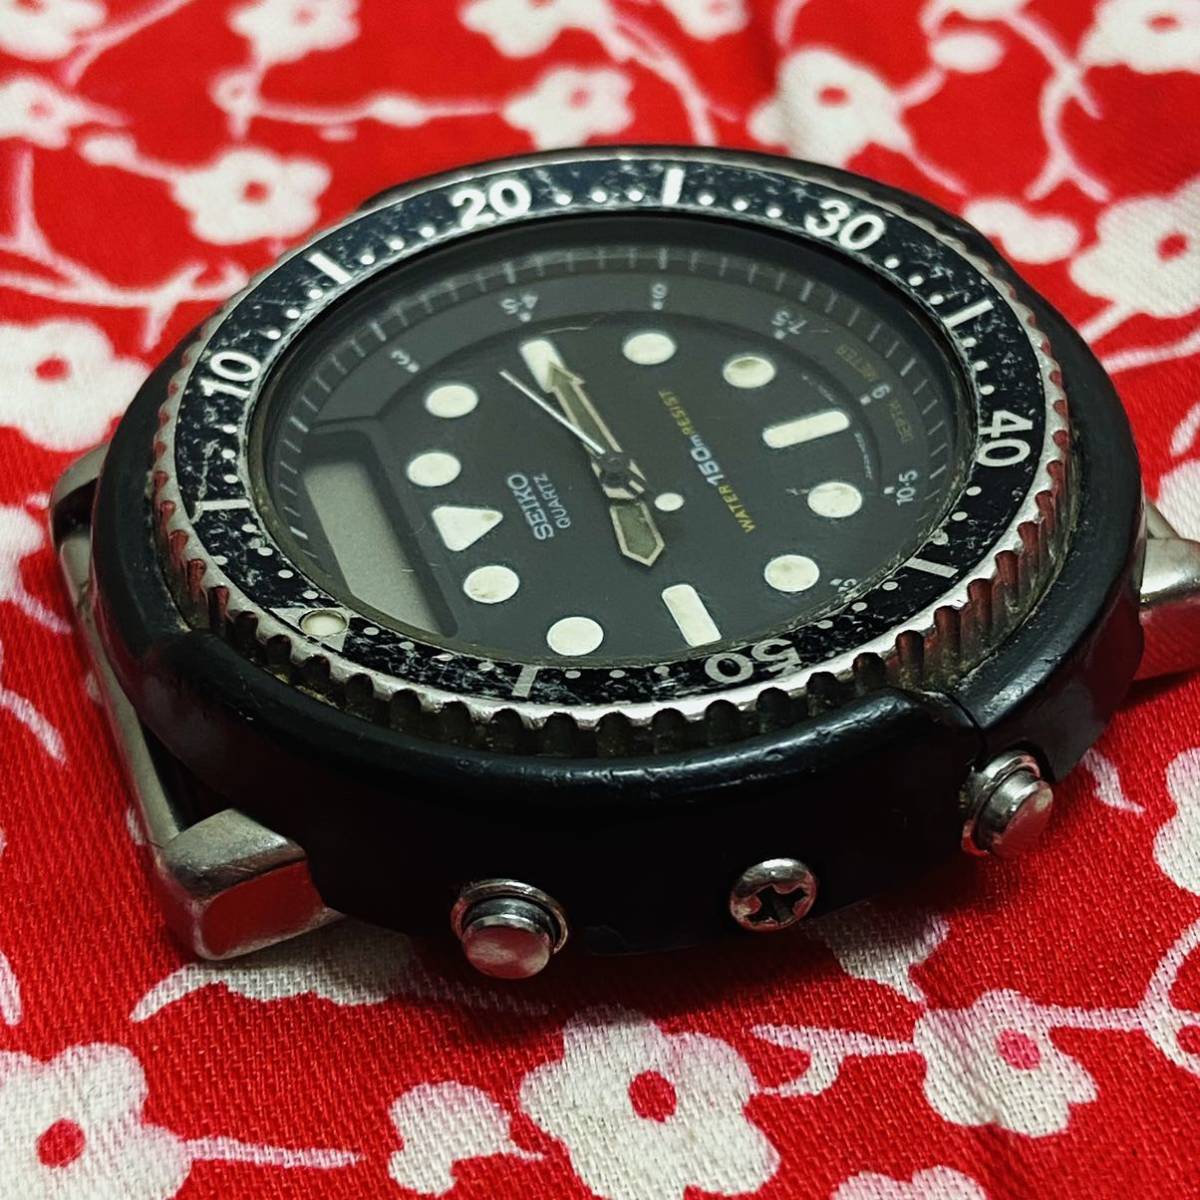 SEIKOセイコーH558-5000ビンテージ150mハイブリッド ダイバー腕 時計